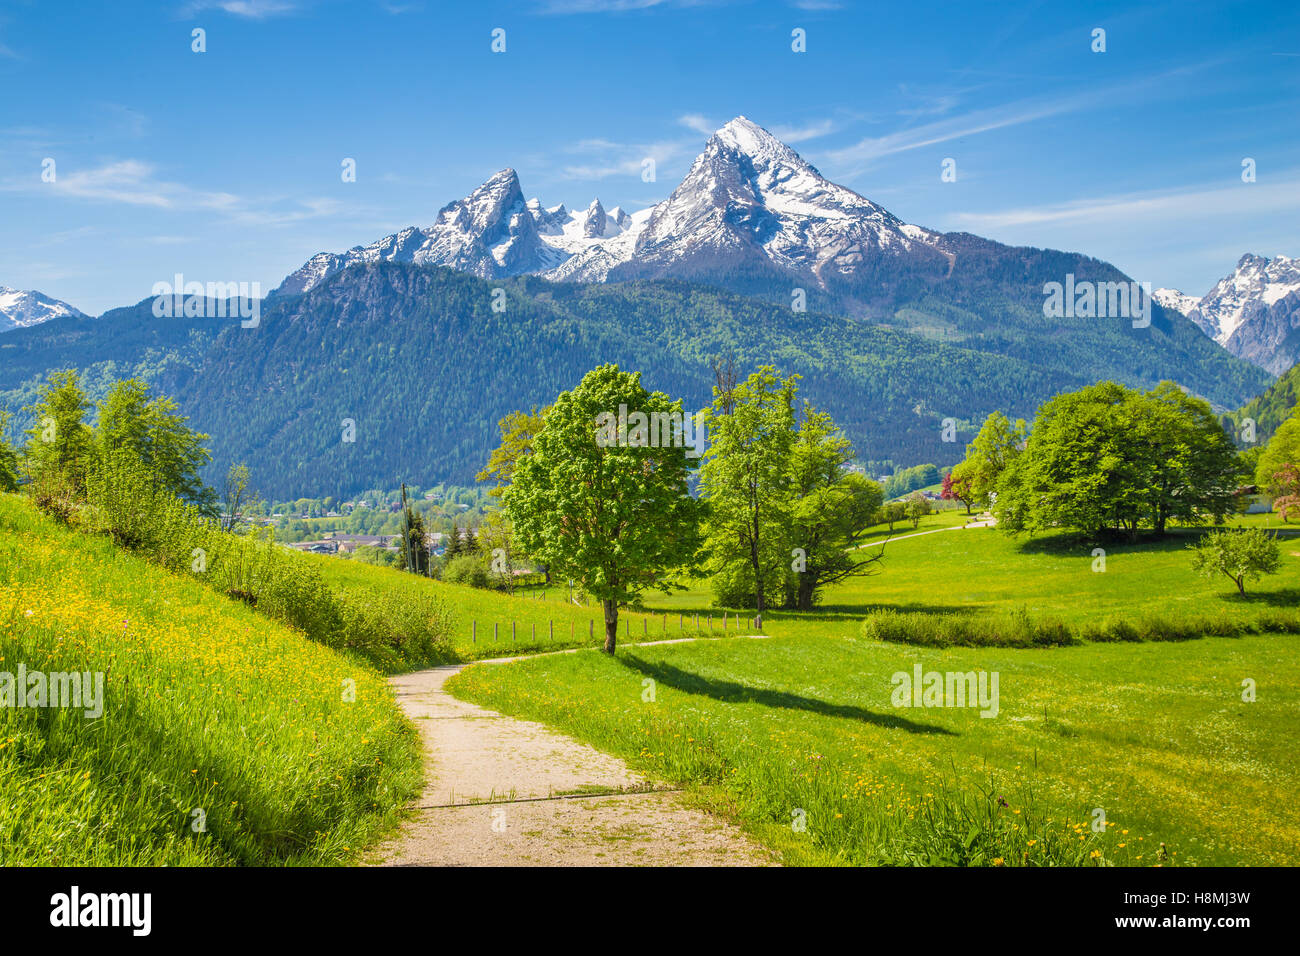 Idyllische Landschaft mit Wander-Trail in den Alpen mit frischen grünen Almen und schneebedeckten Berggipfeln im Hintergrund an einem schönen Tag Stockfoto